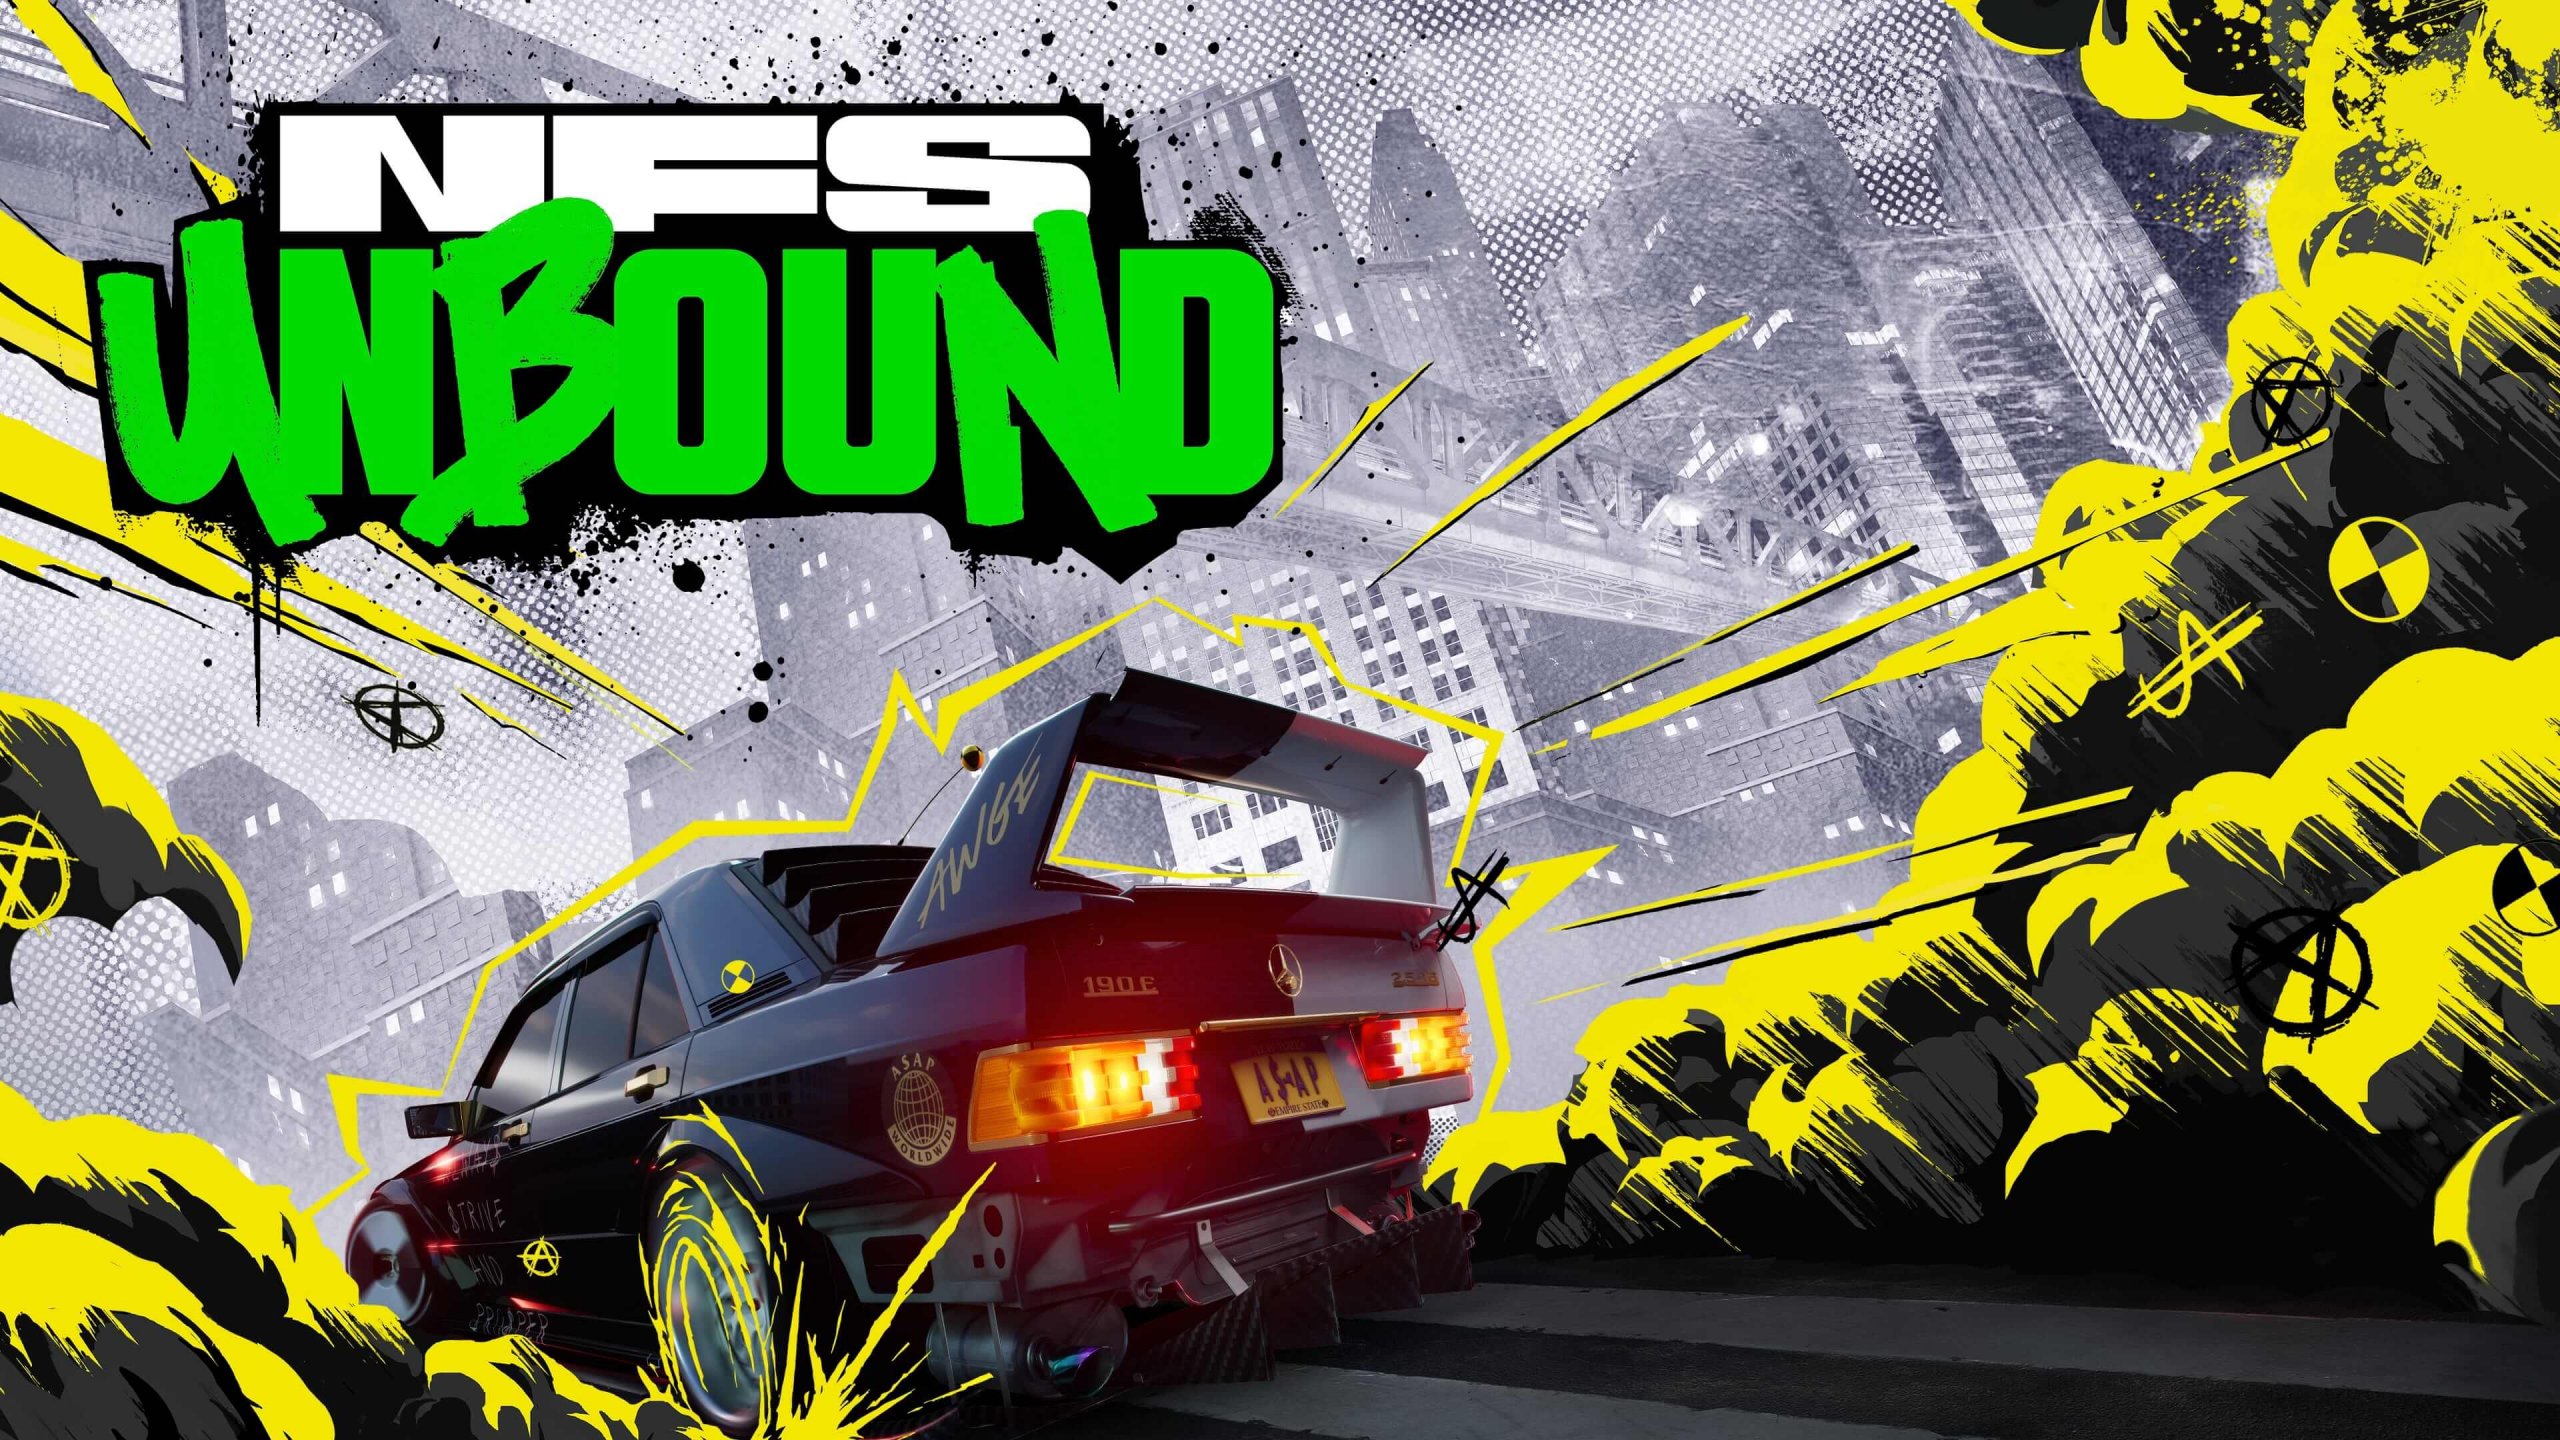 Winnen! Maak kans op een zeer exclusieve lifestyle tee van Need for Speed Unbound!